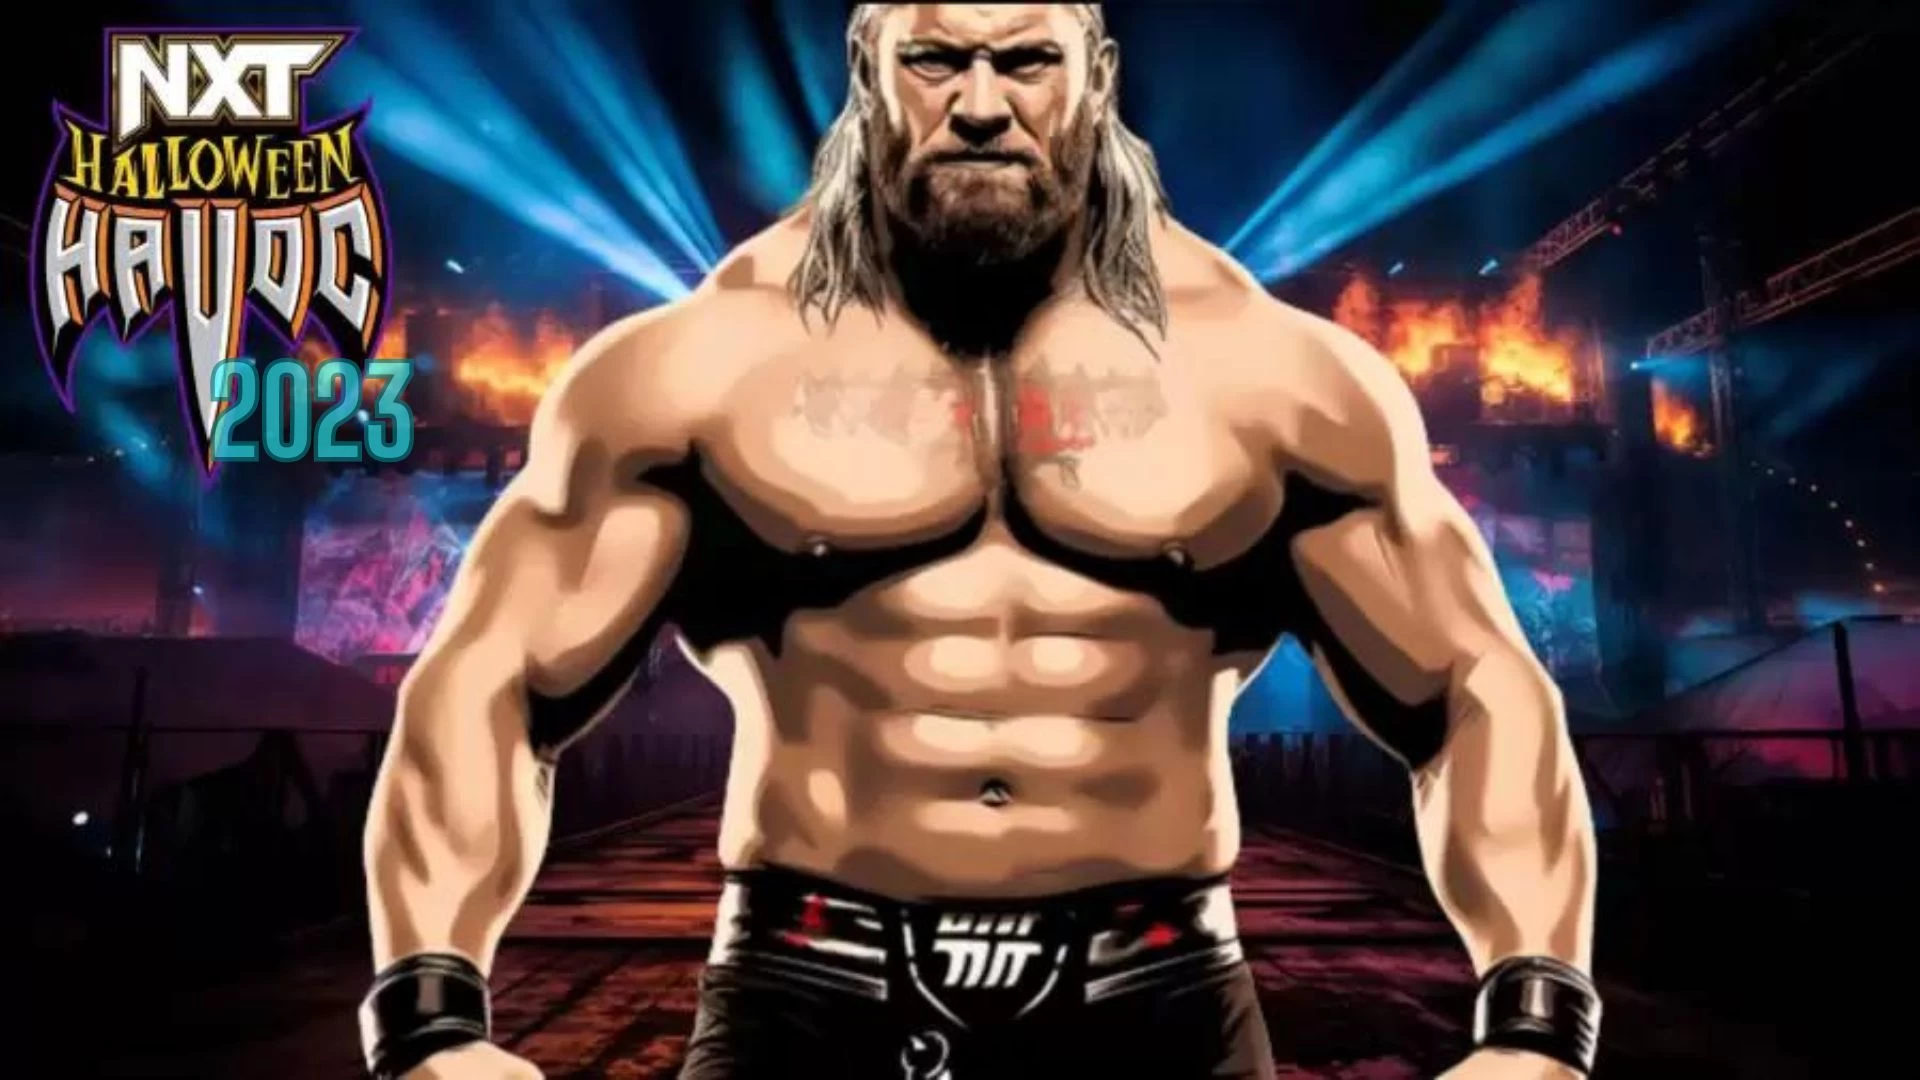 WWE NXT Halloween Havoc 2023, coanfitrión, fecha de inicio y más